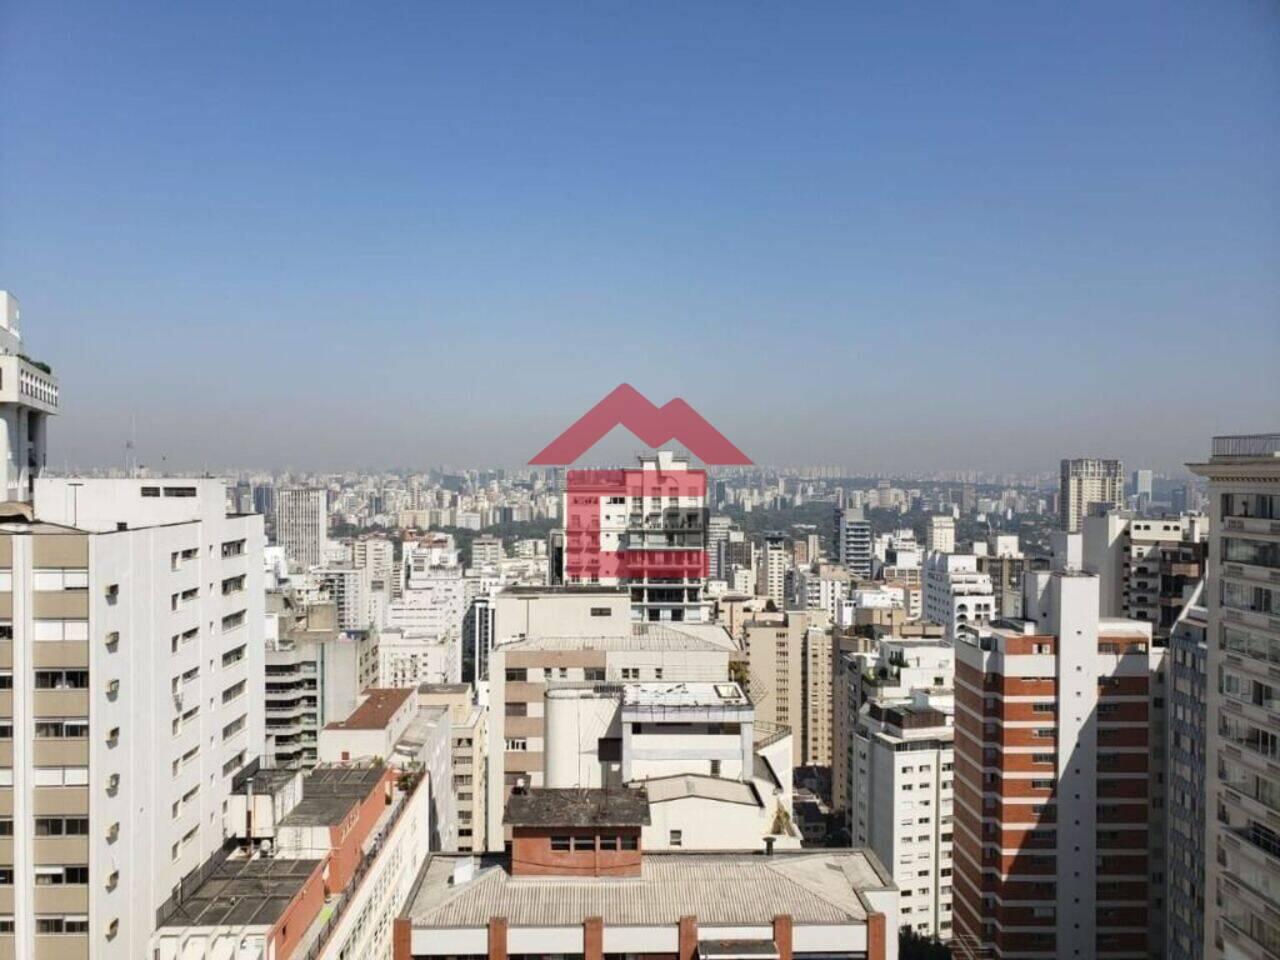 Apartamento Jardim América, São Paulo - SP